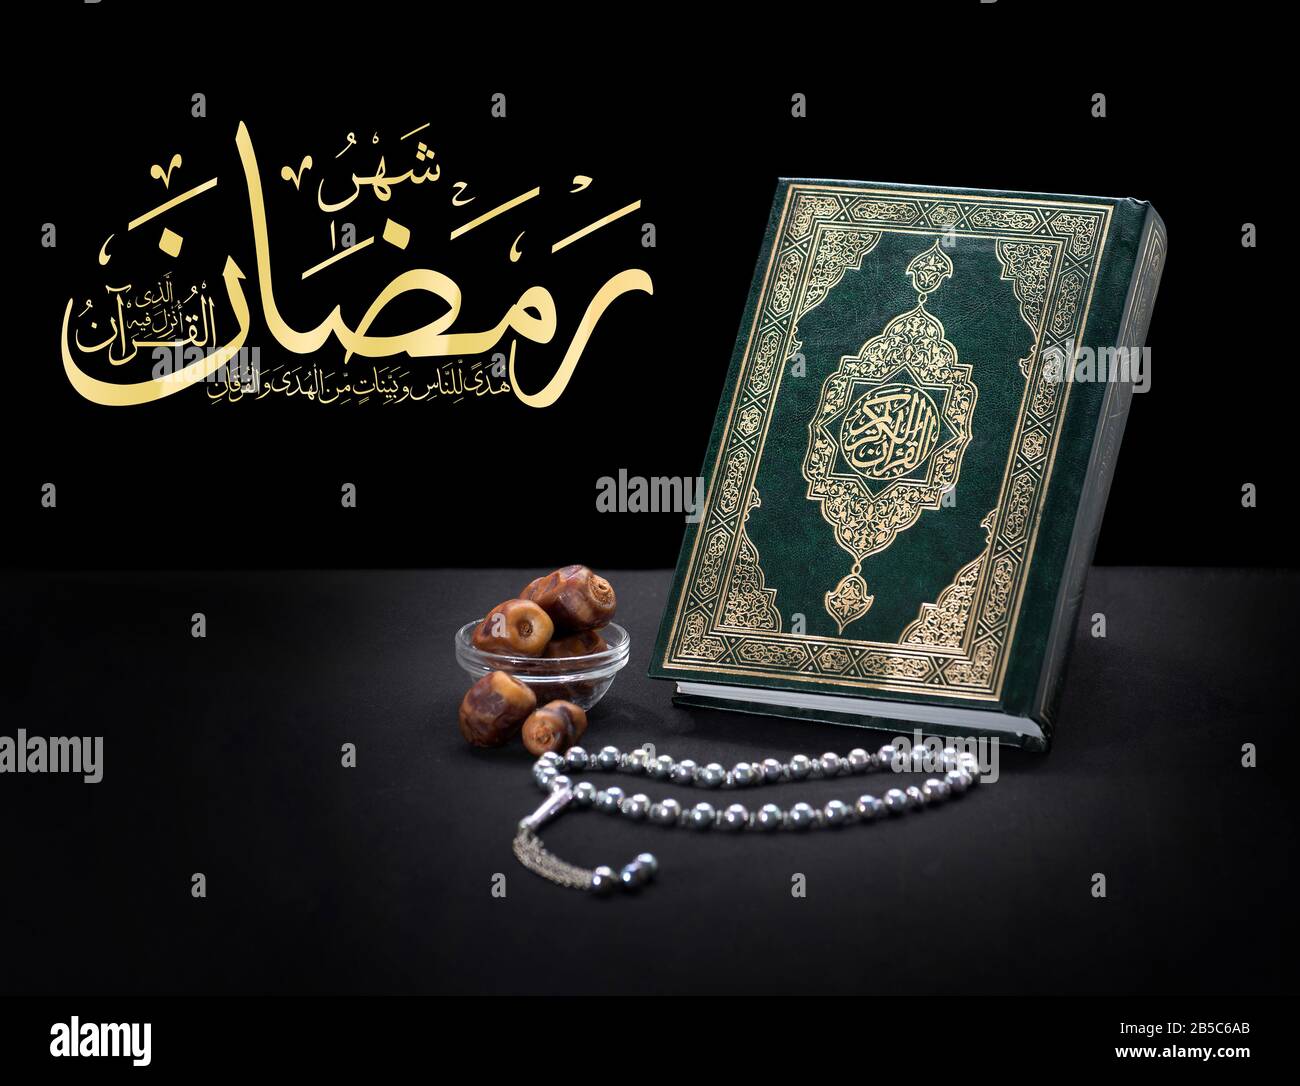 Heilig Buch Quran Mit Rosary mit arabischem Quran Ayah Text, Der Sagt: "Der Monat Ramadhan [ist der], in dem der Koran enthüllt wurde, eine Anleitung für Th Stockfoto